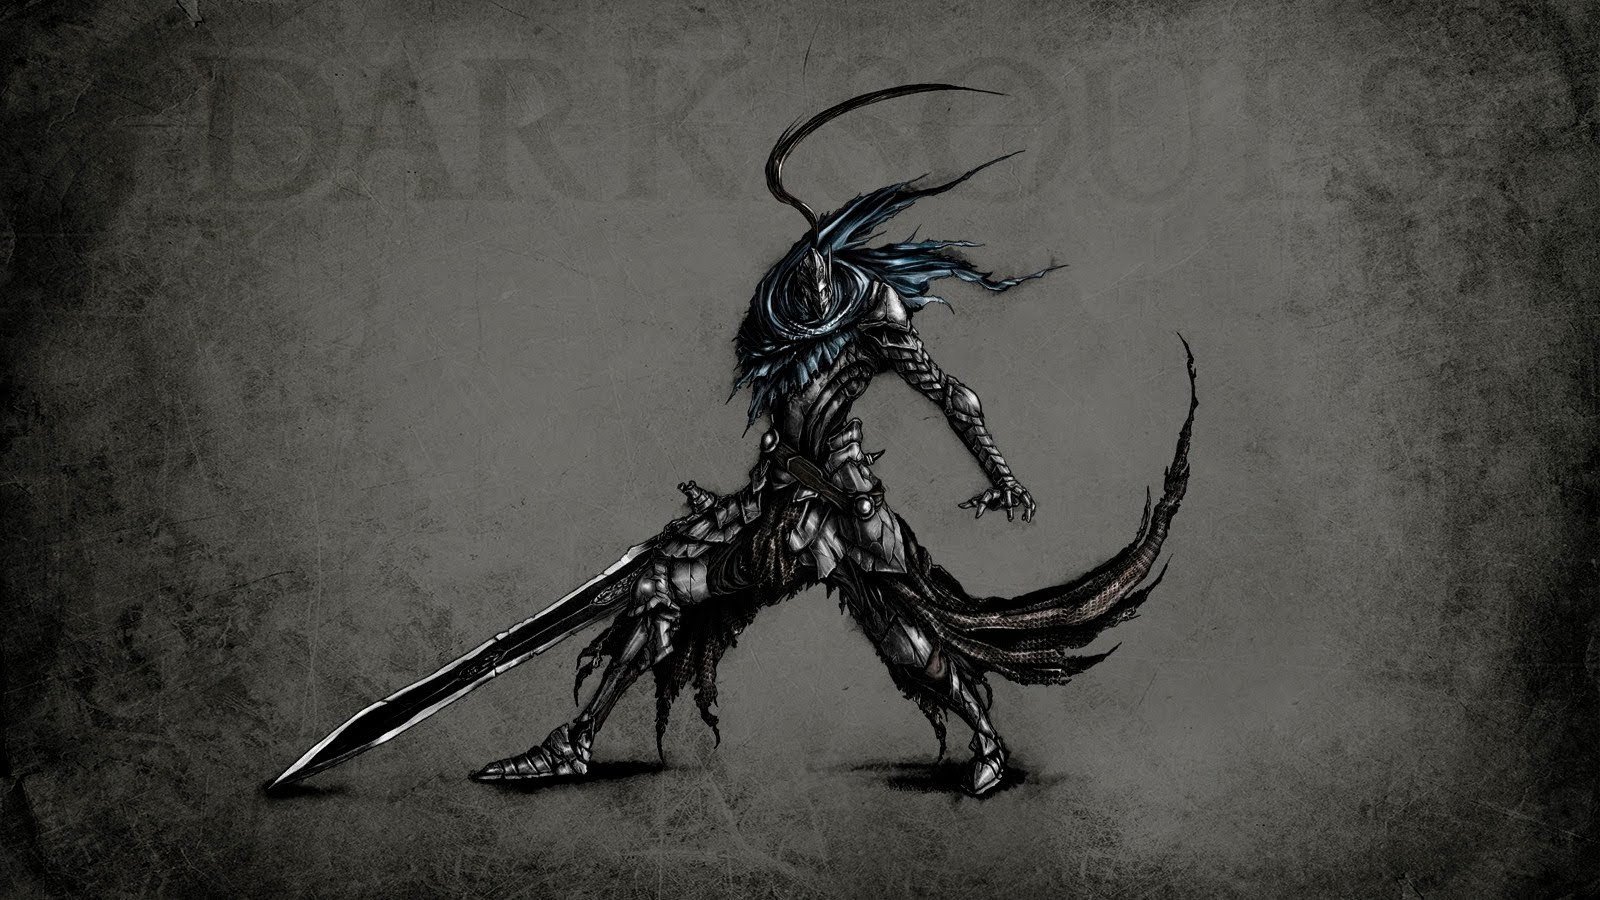 Dark Souls, Artorias Wallpaper